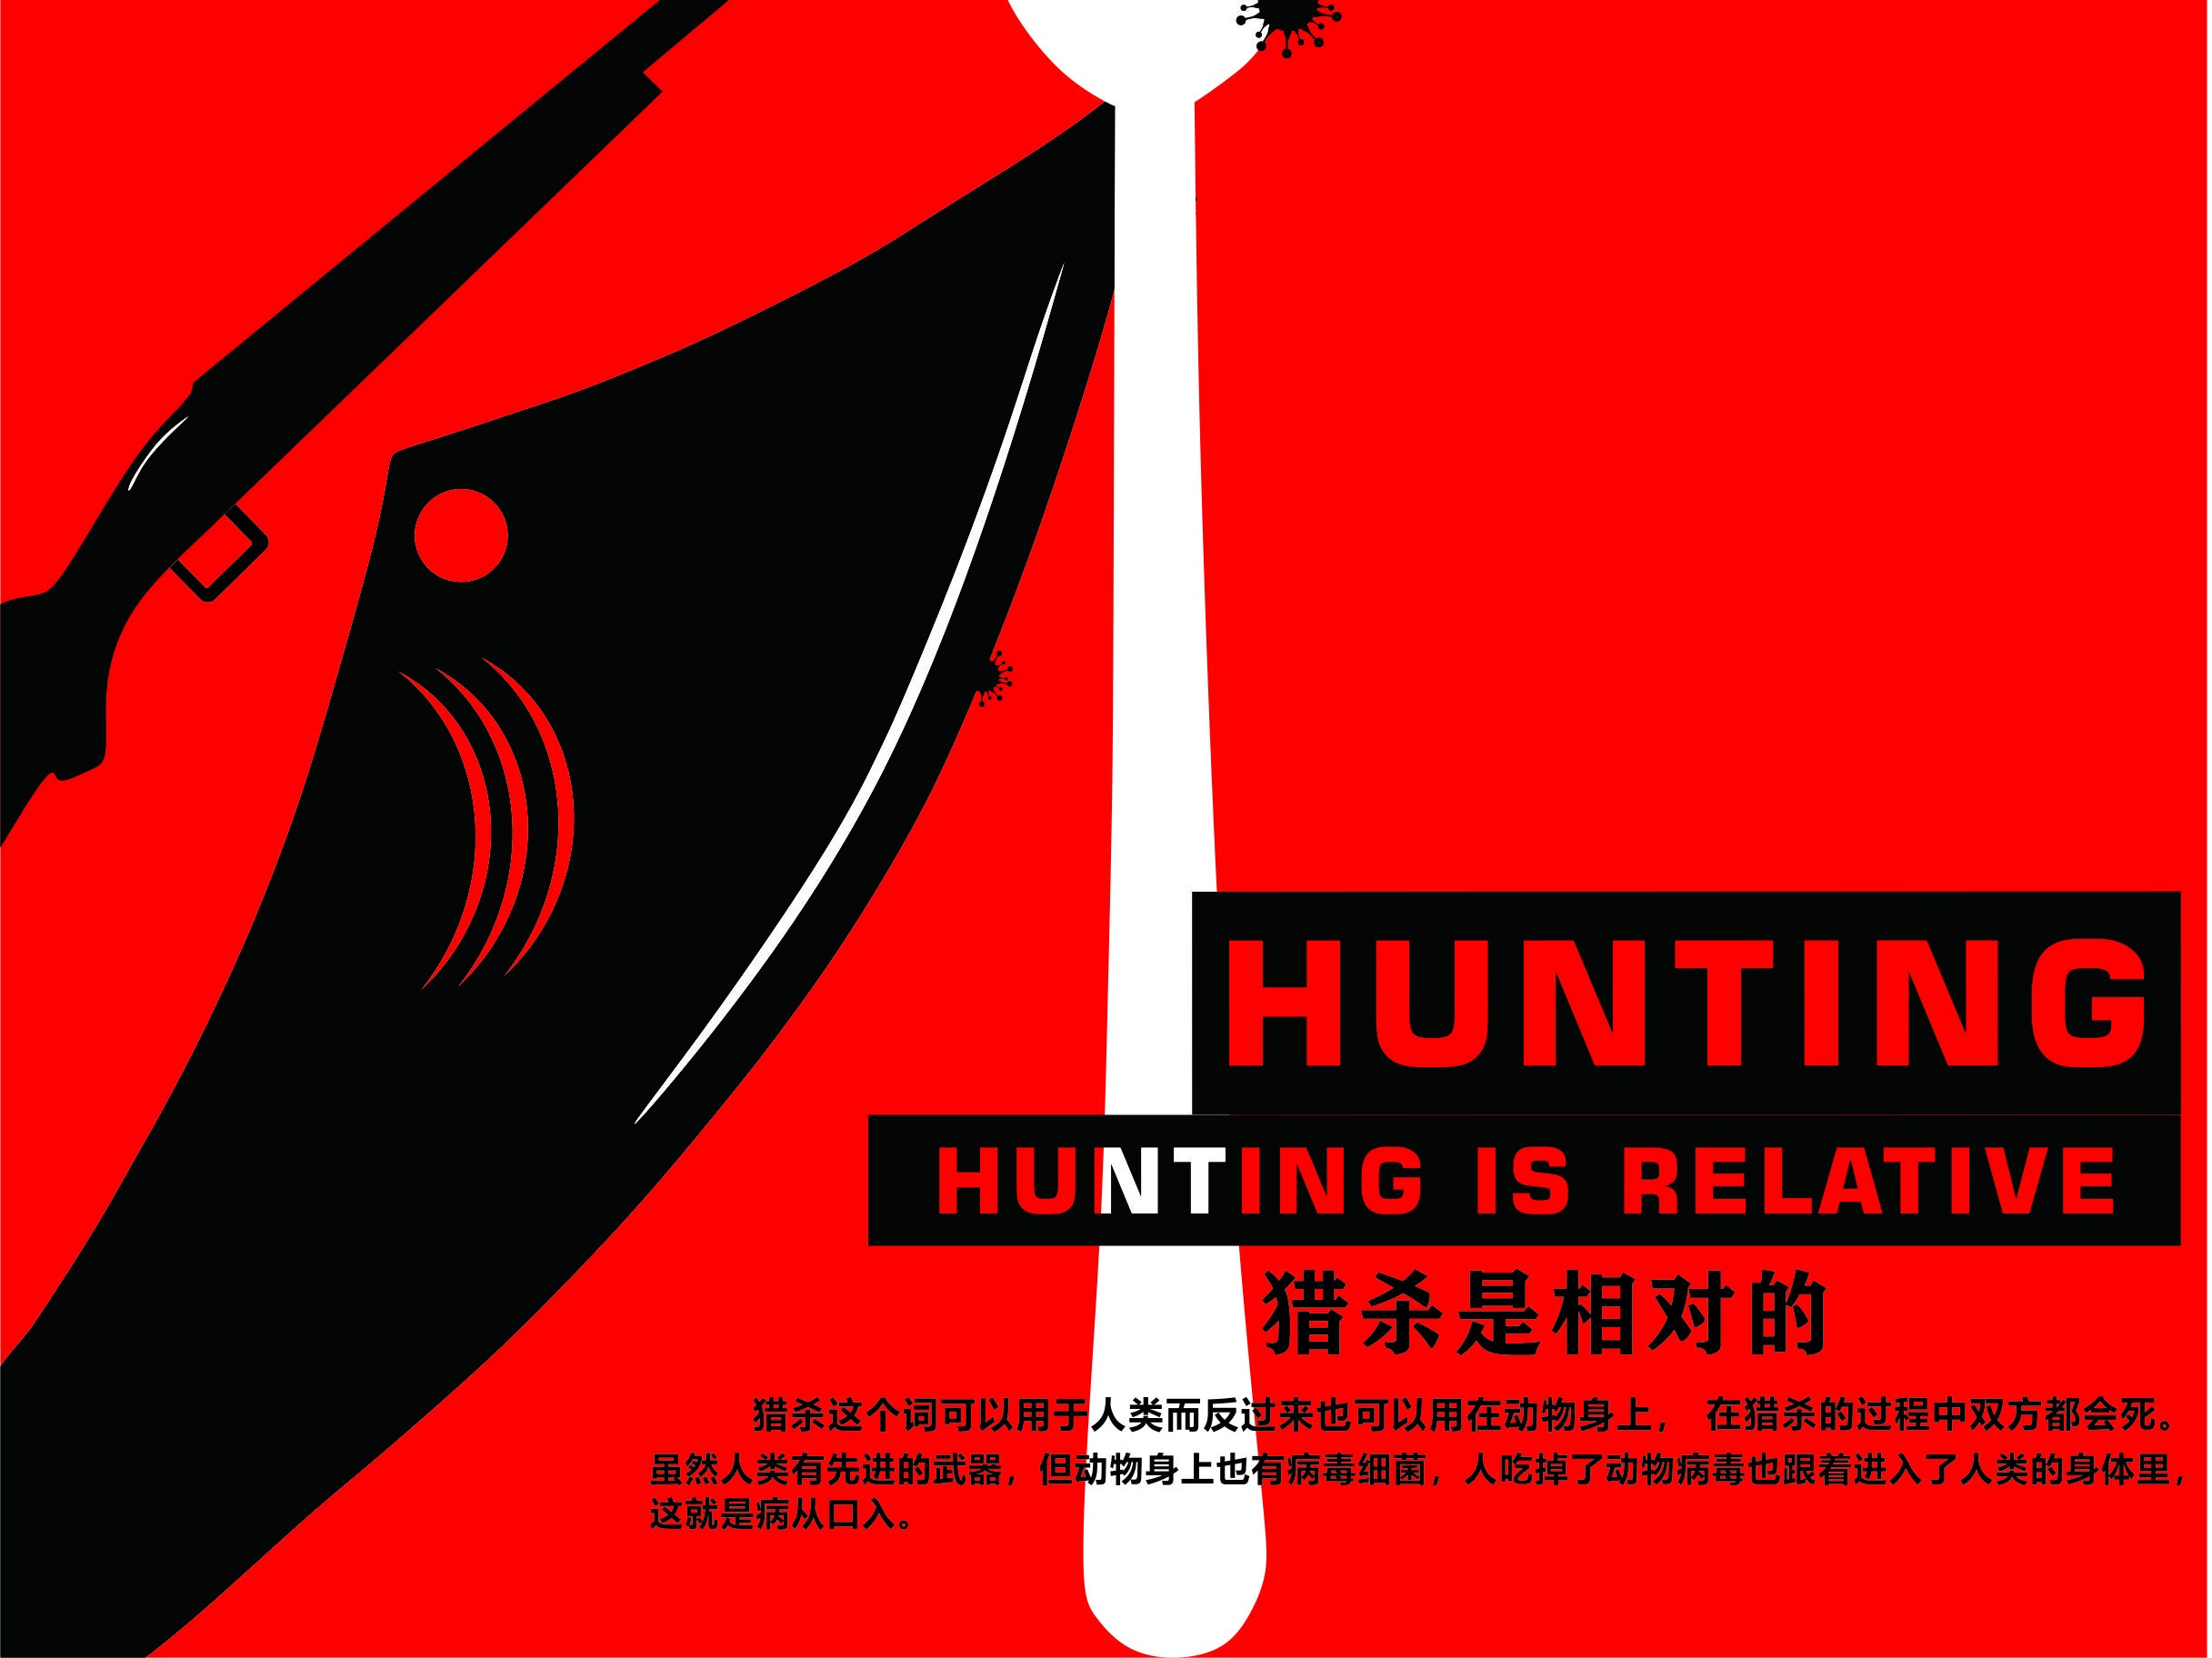 禁止狩獵 警示插畫 禁止獵殺保護動物 禁止打獵, 圓形的警示牌, 禁止打獵的卡通插畫, 黑色圖示素材圖案，PSD和PNG圖片免費下載